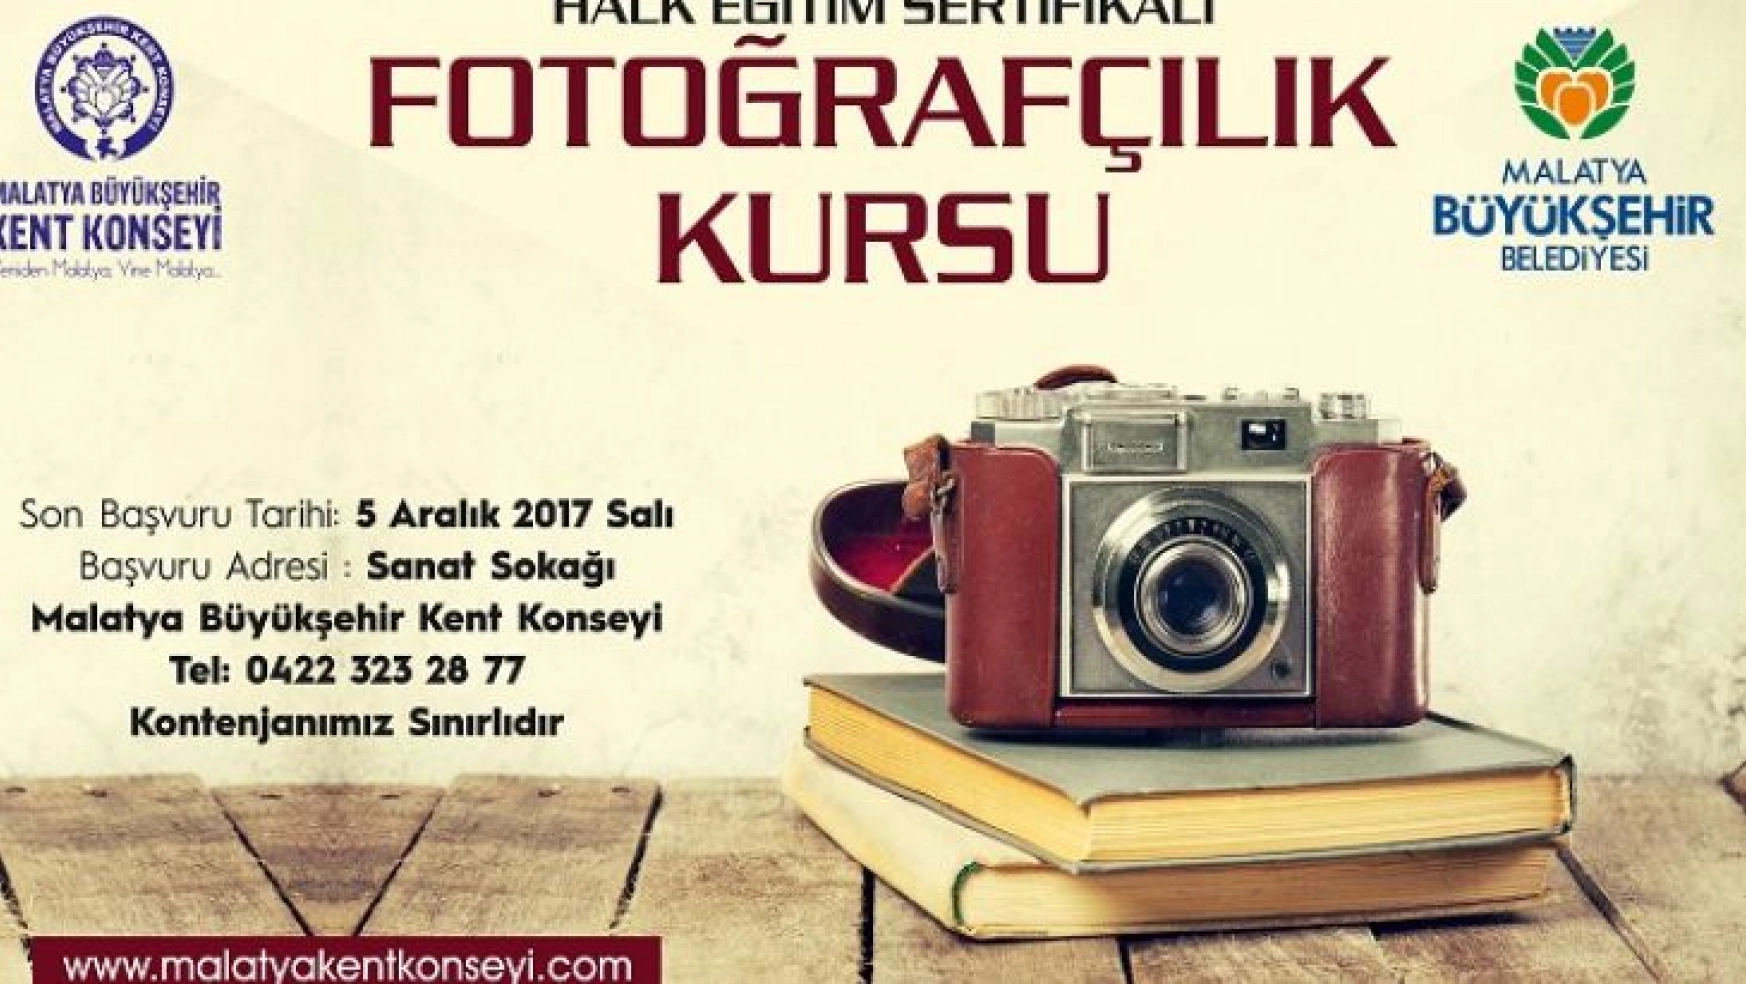 Malatya'da fotoğrafçılık kursu açılacak